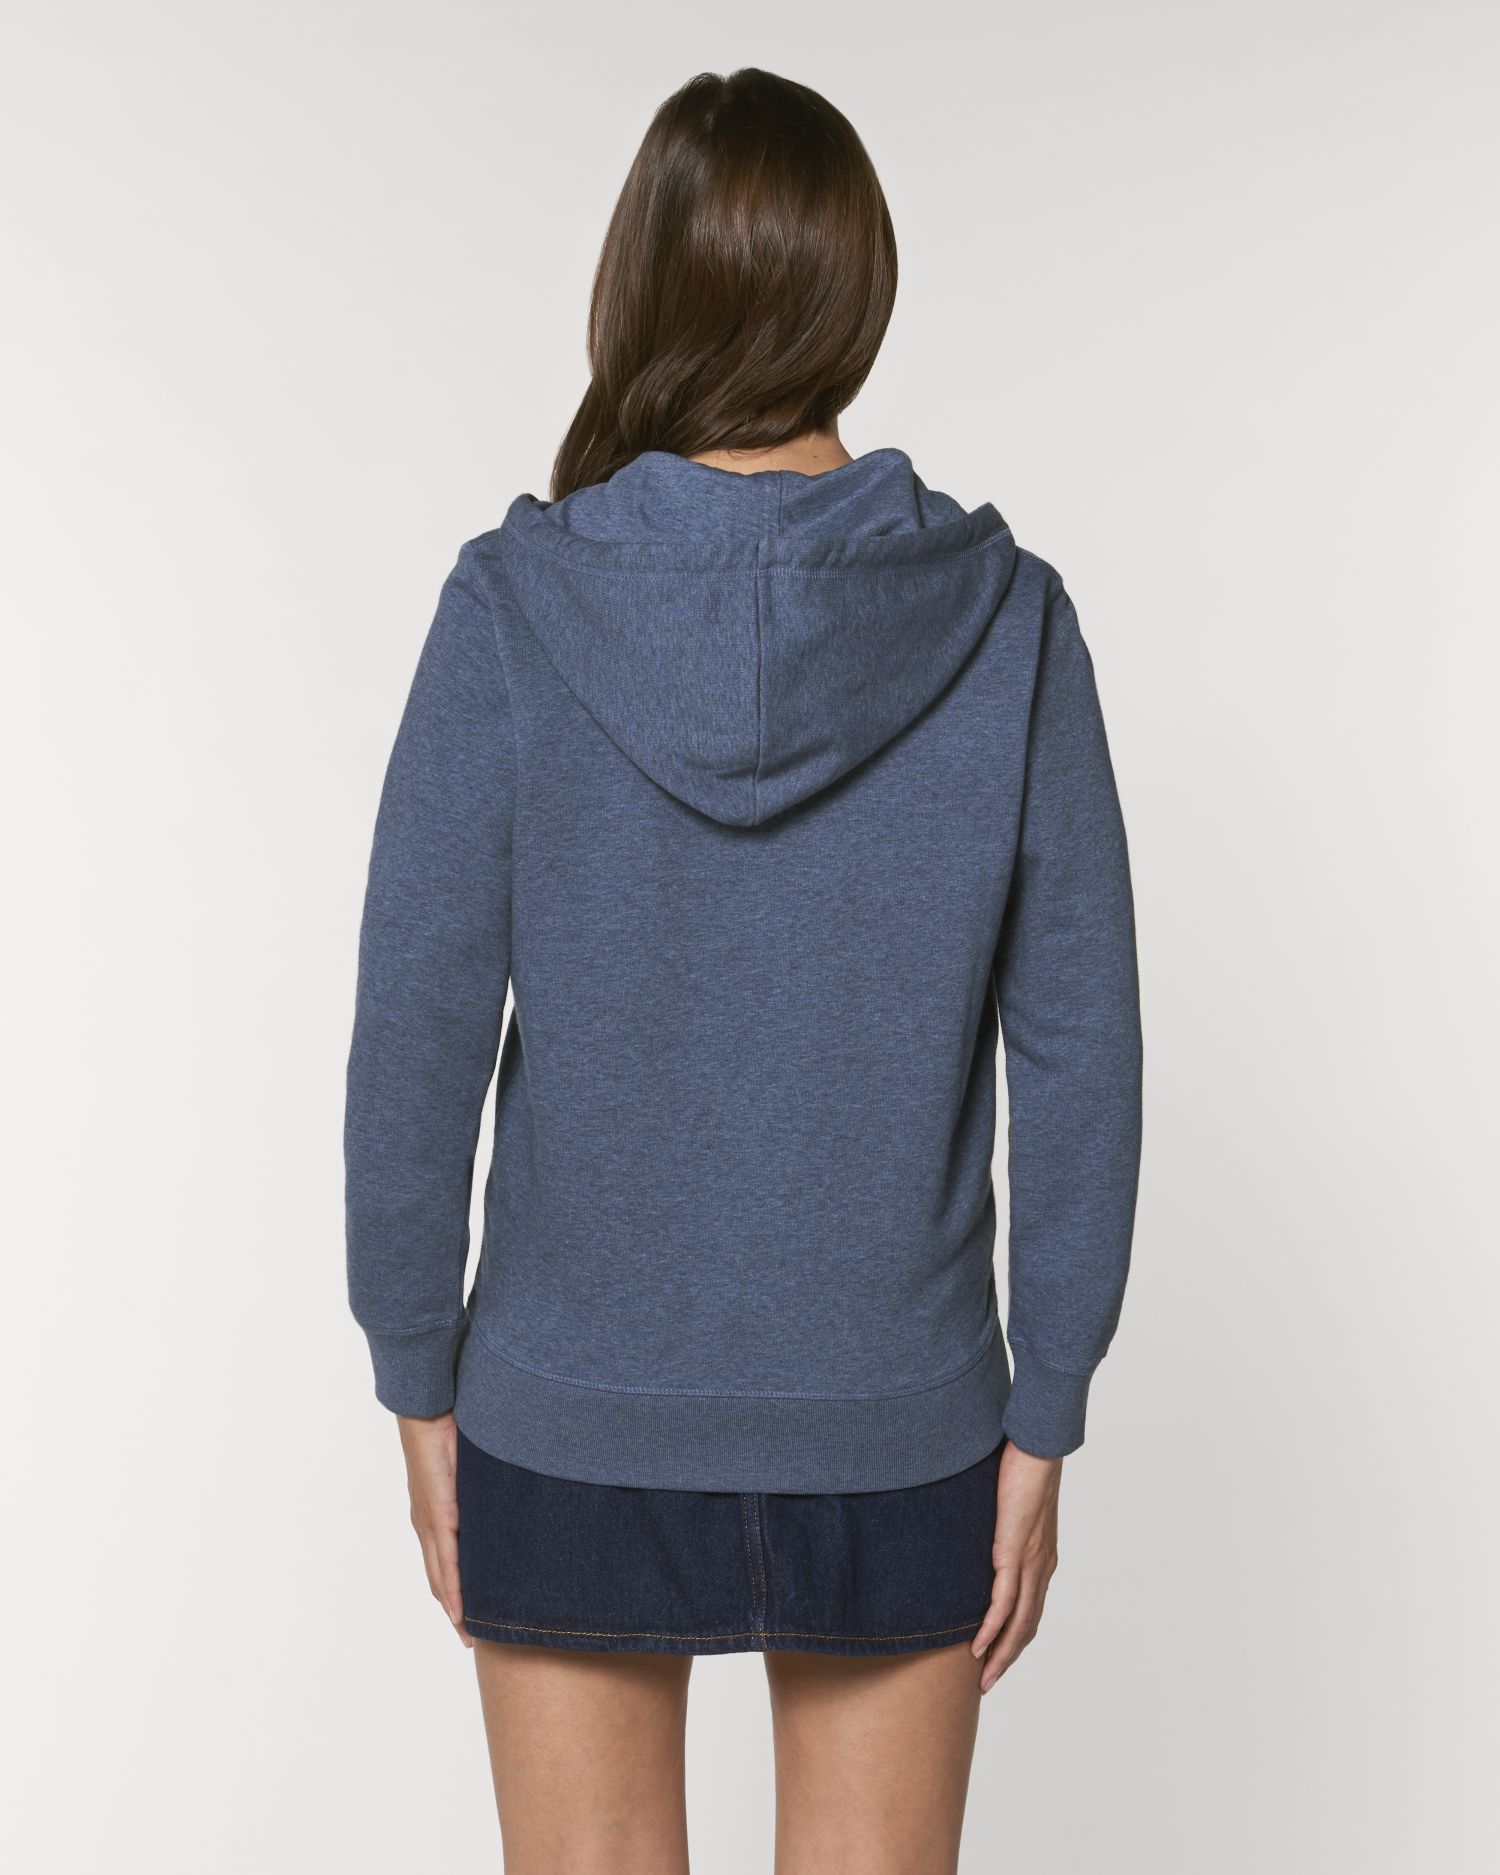 Zip-thru sweatshirts Connector in Farbe Dark Heather Blue